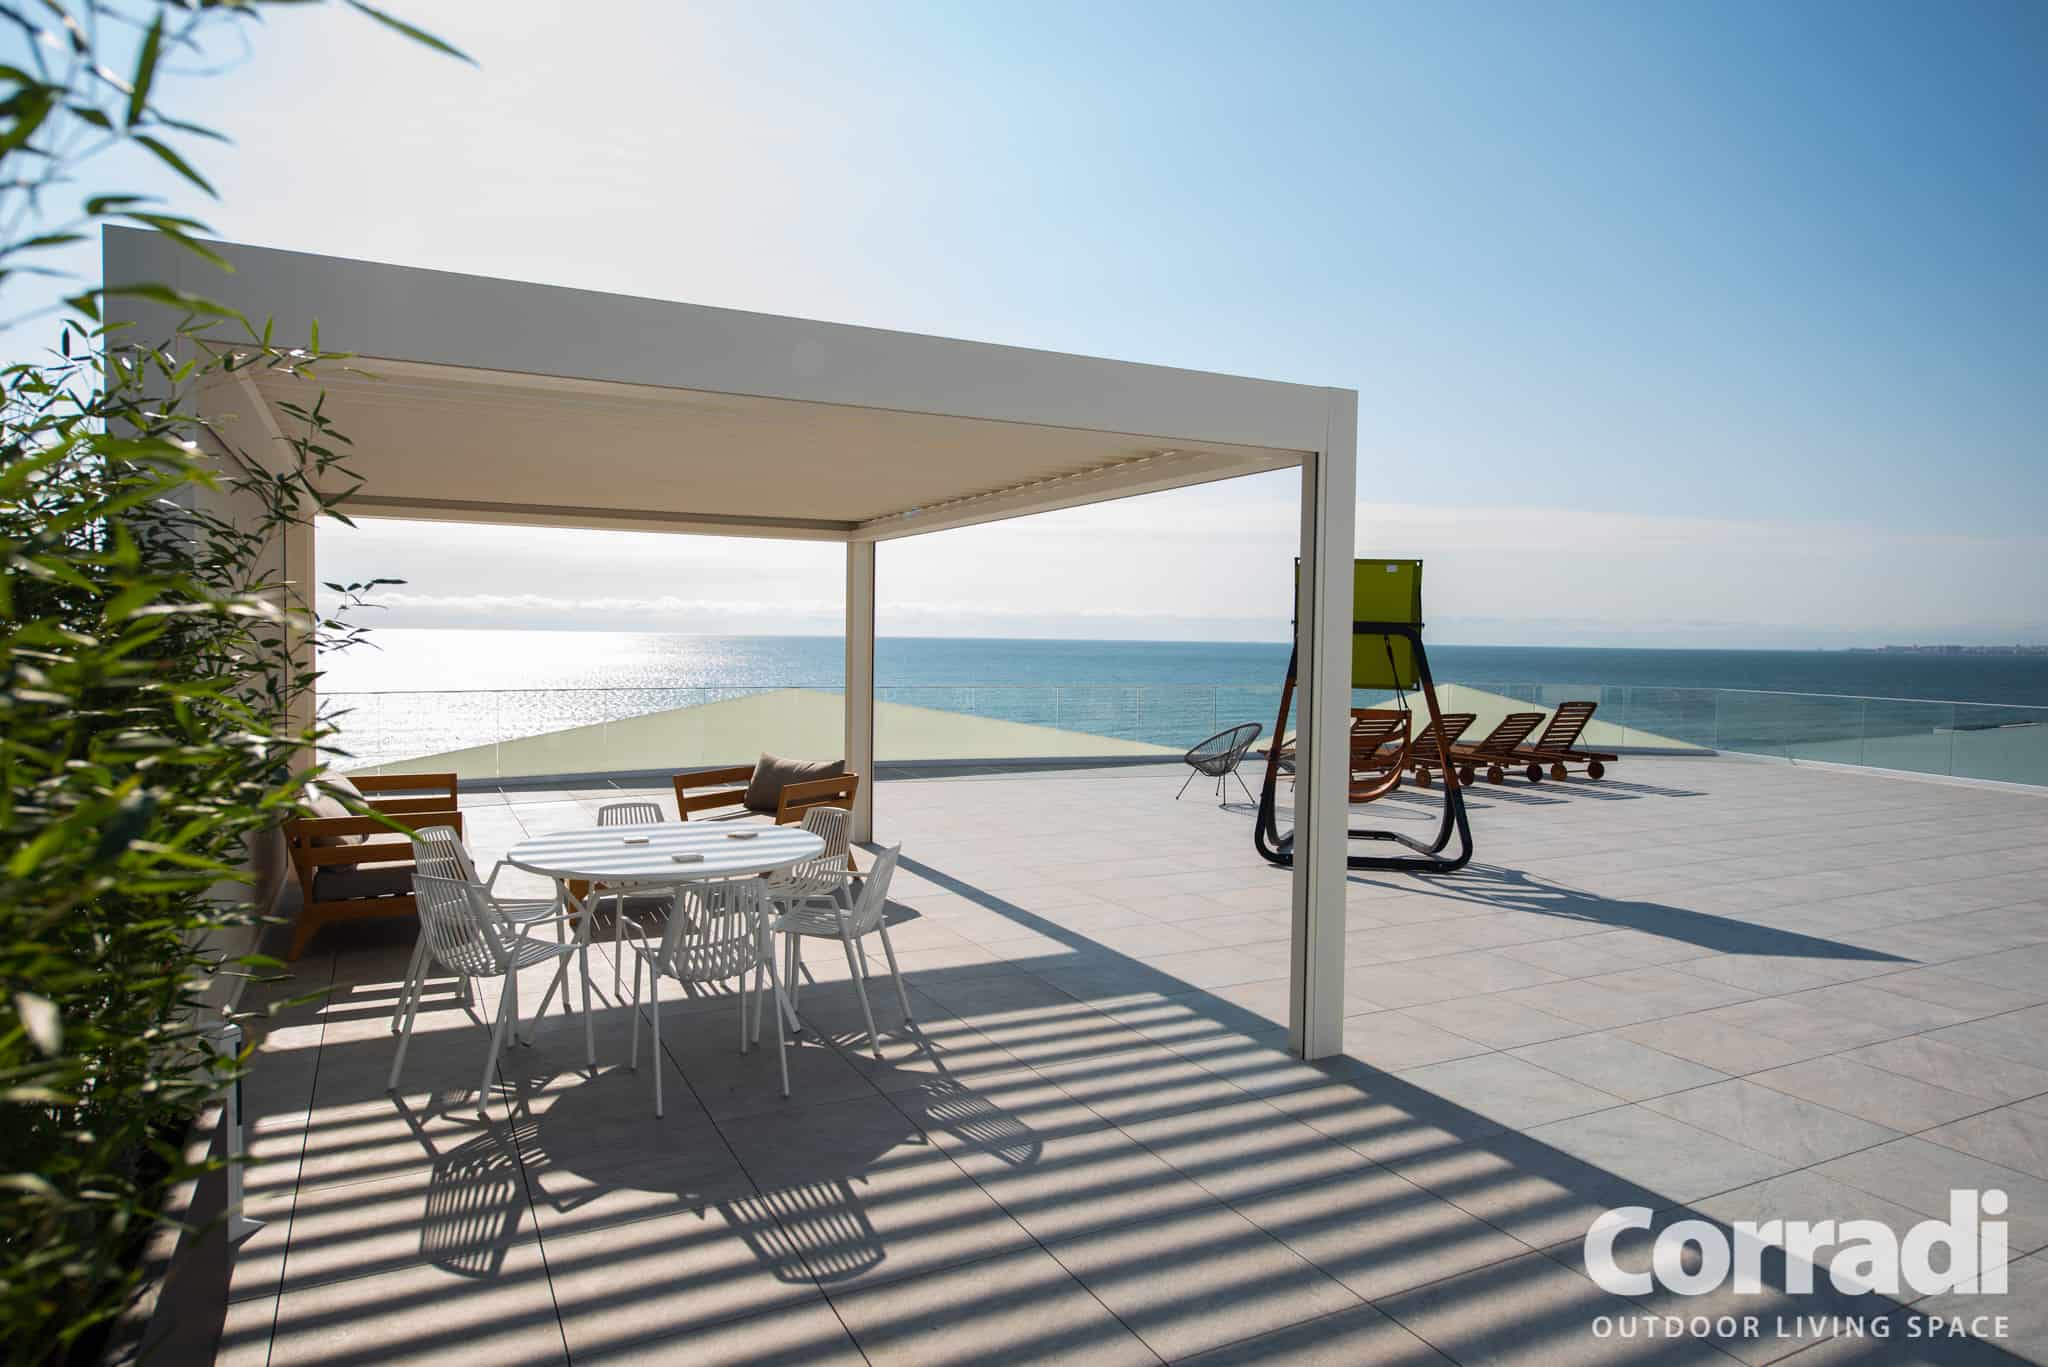 Pergola bioclimatica de calitate pentru terasa in Romania pe litoral